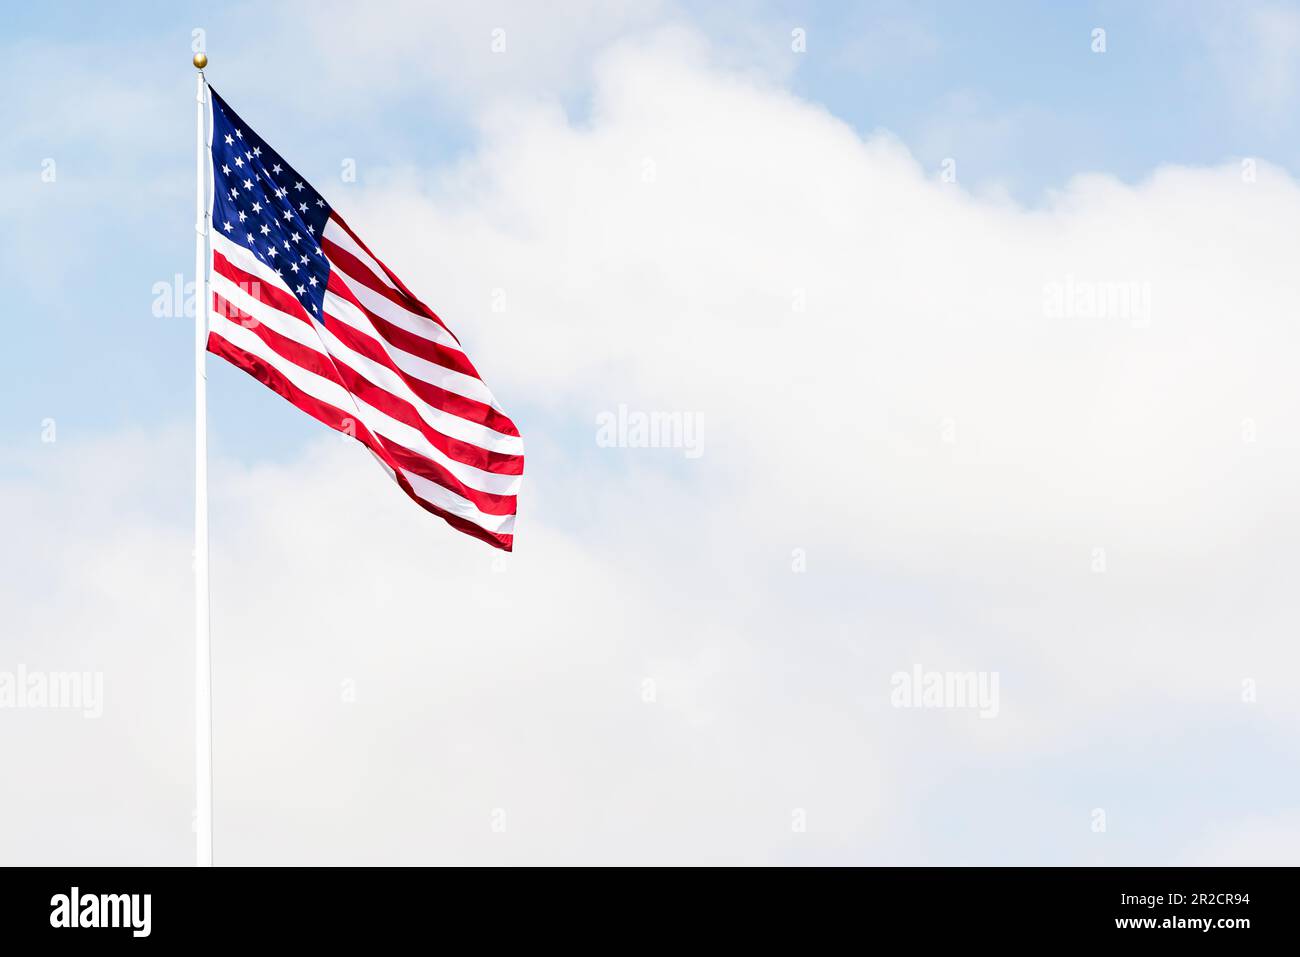 Une photo du drapeau américain qui agite contre le ciel symbolisant le patriotisme, la liberté et la fierté nationale Banque D'Images